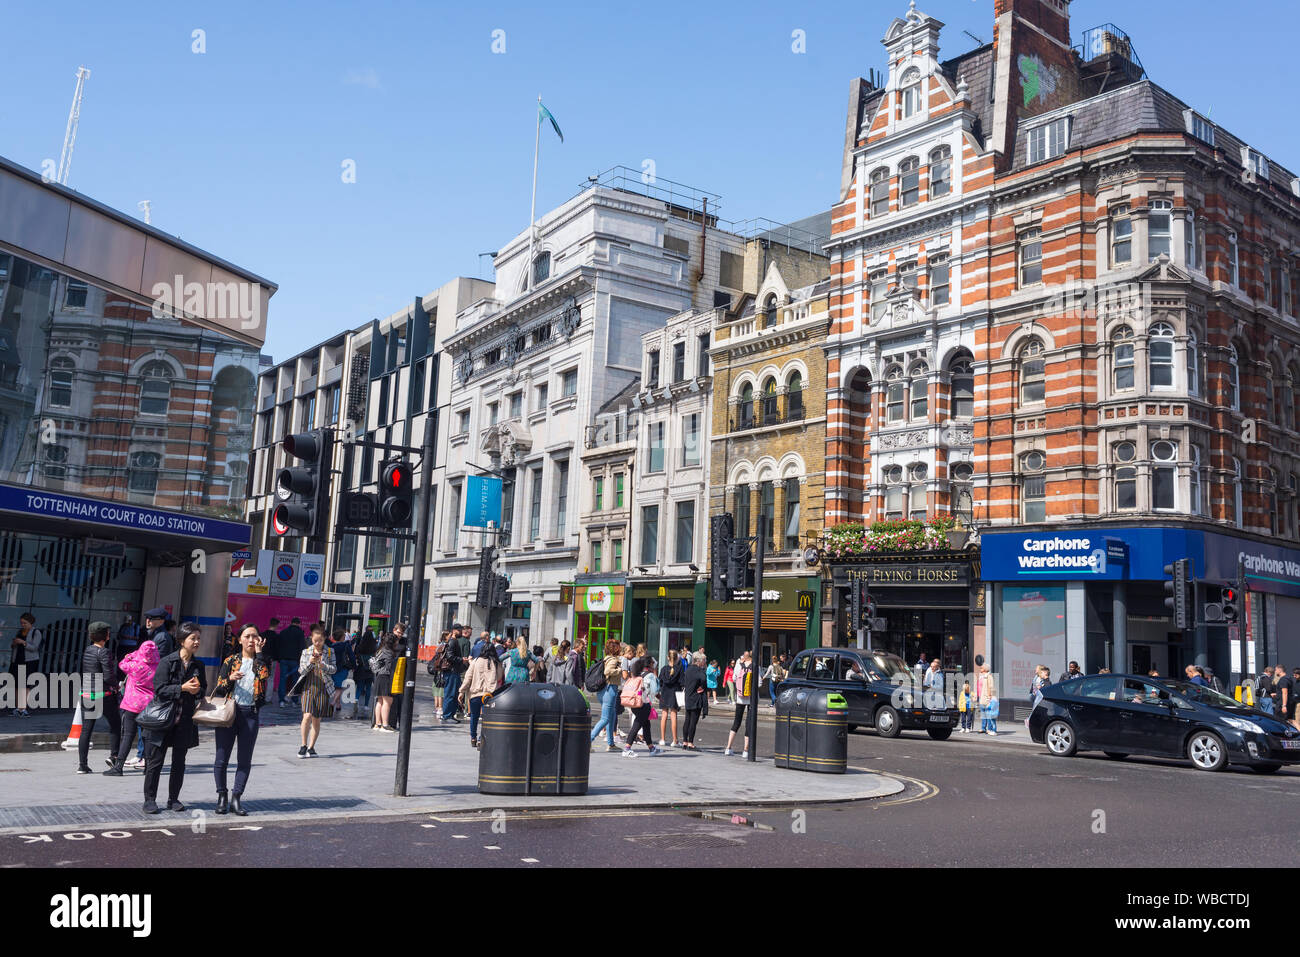 London, UK - August 2019: geschäftigen Kreuzung mit Fußgängern Touristen und Autos vor Station Tottenham Court Road, London, UK Stockfoto